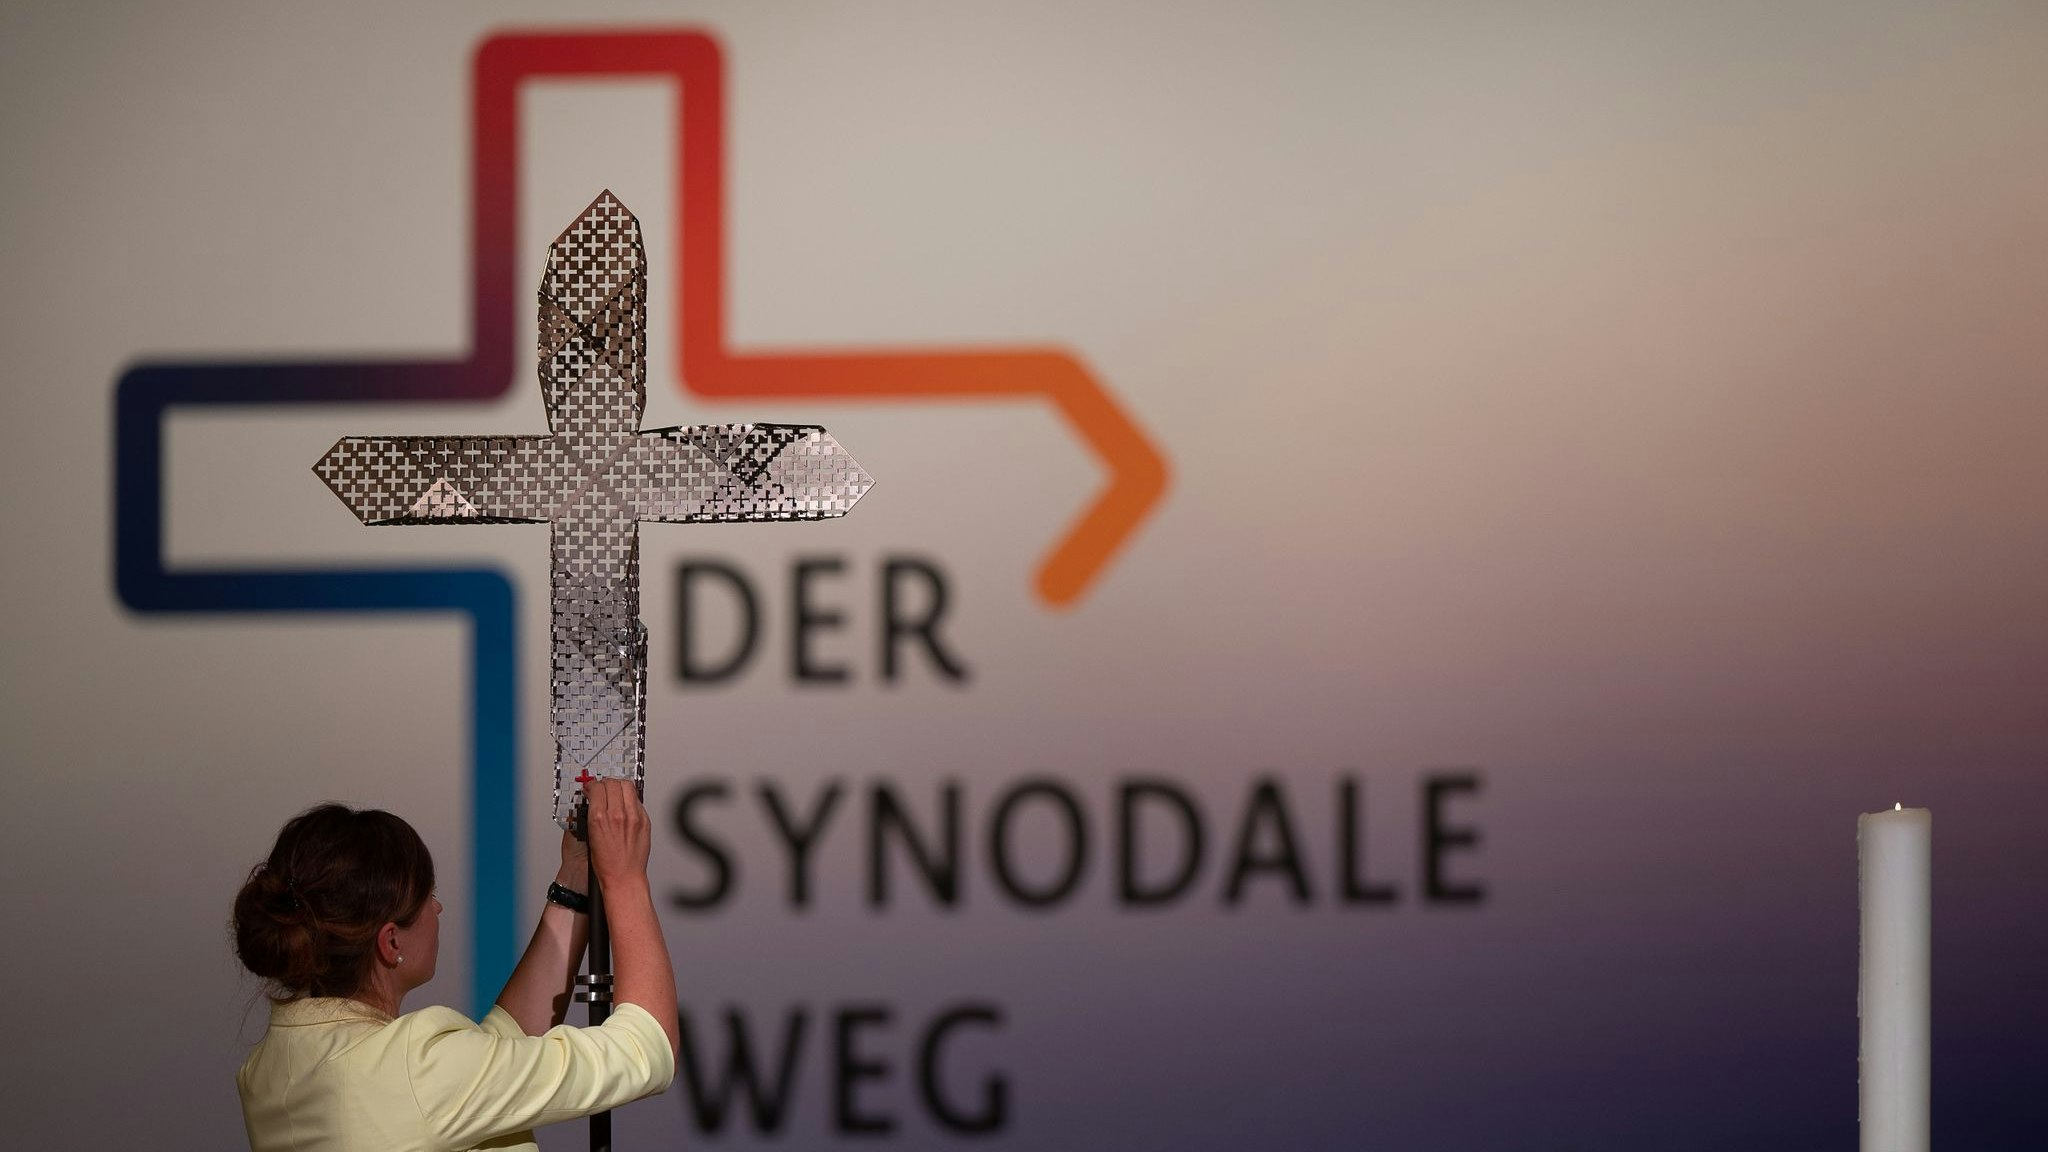 Seit fast 4 Jahren läuft unter dem Namen Synodaler Weg ein Reformprozess in der katholischen Kirche in Deutschland. Foto: dpa/Gollnow